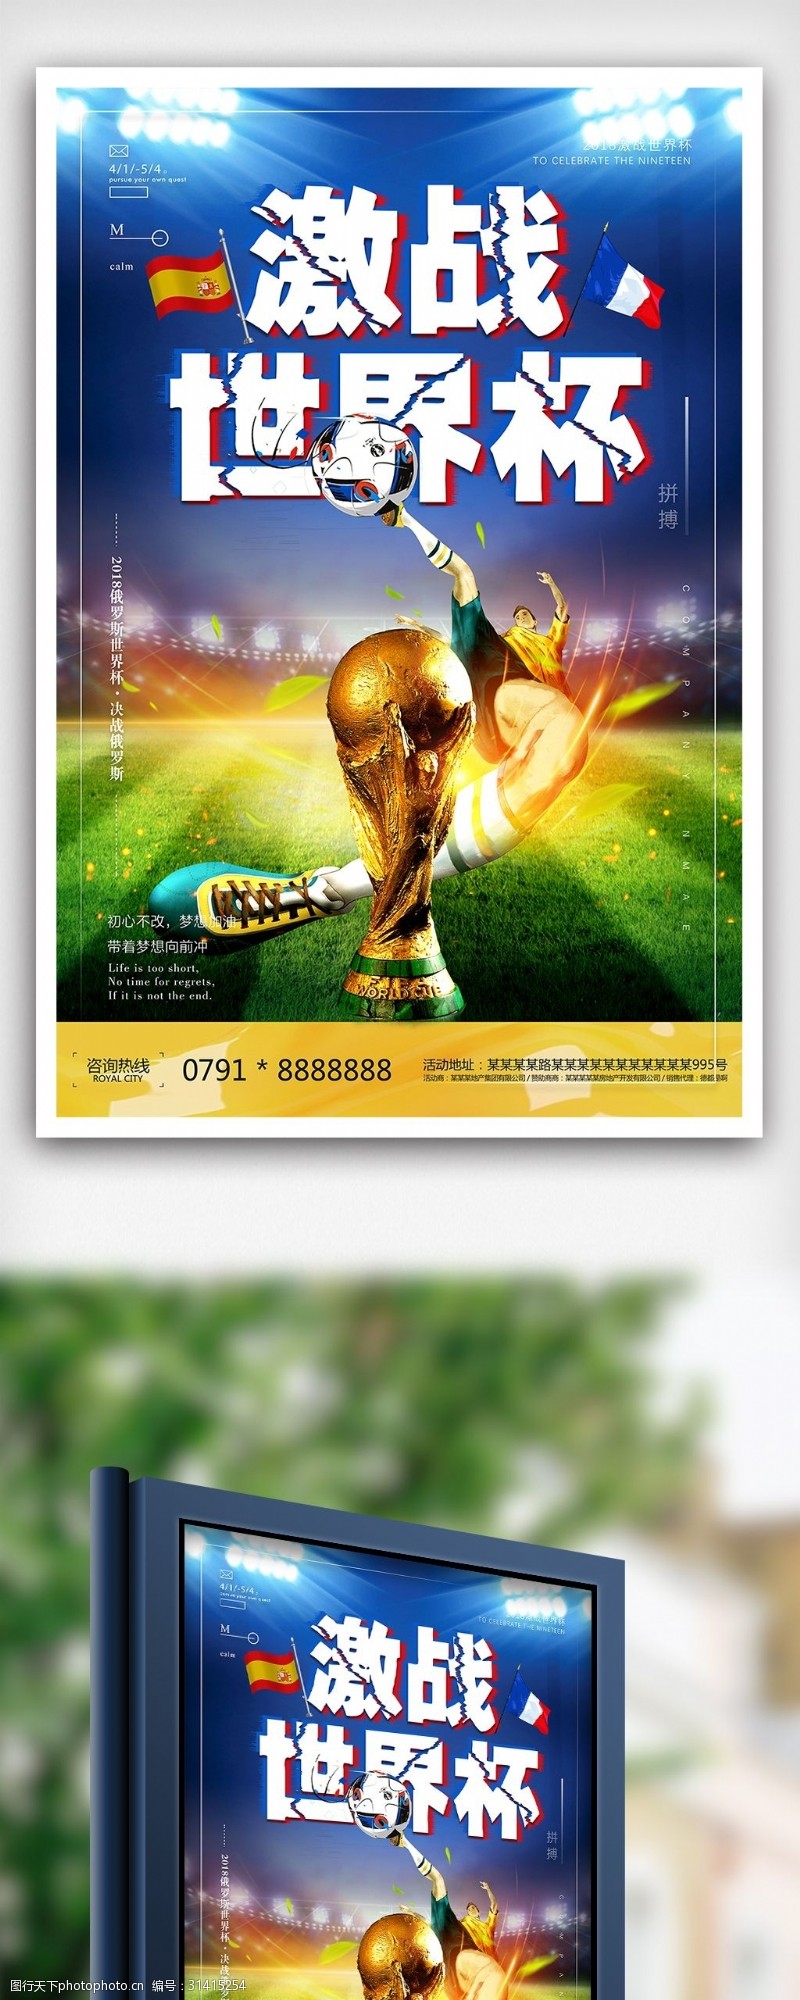 足球主题2018俄罗斯足球世界杯活动海报